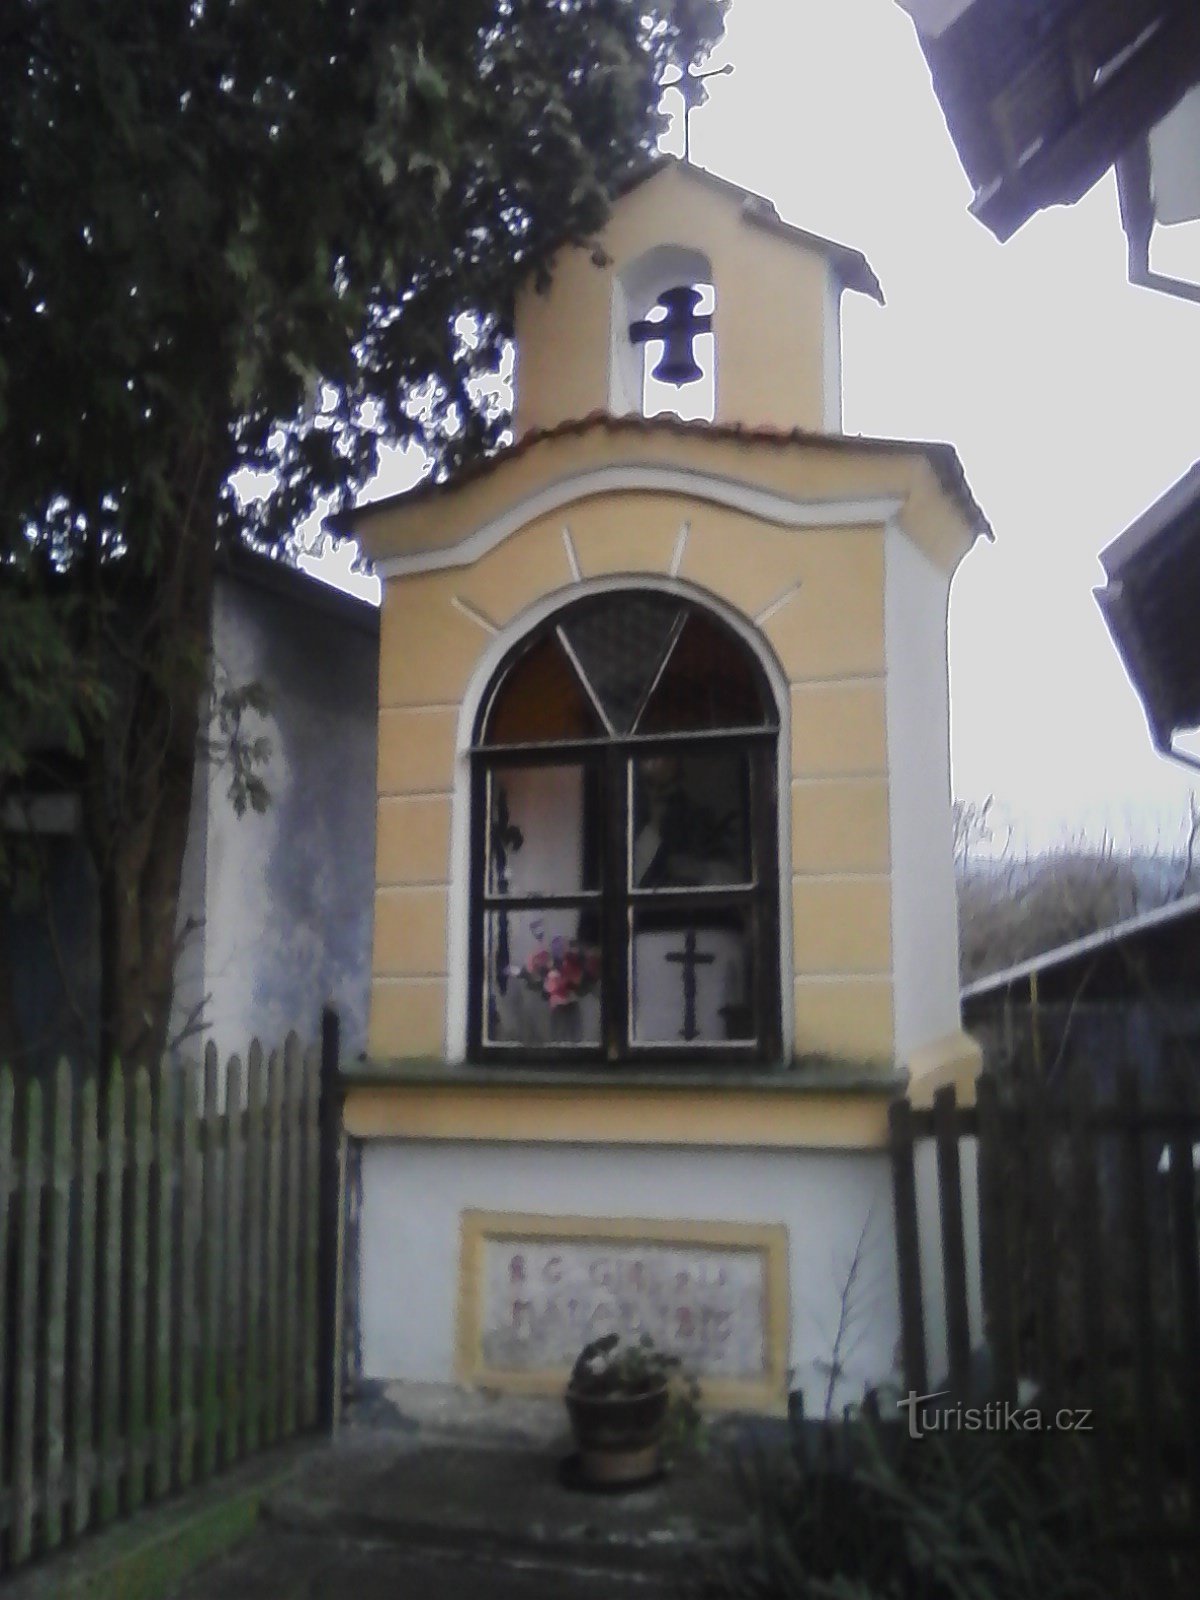 2. Небольшая нишевая часовня в Лидковицах с колокольней и двуконечным крестом в v